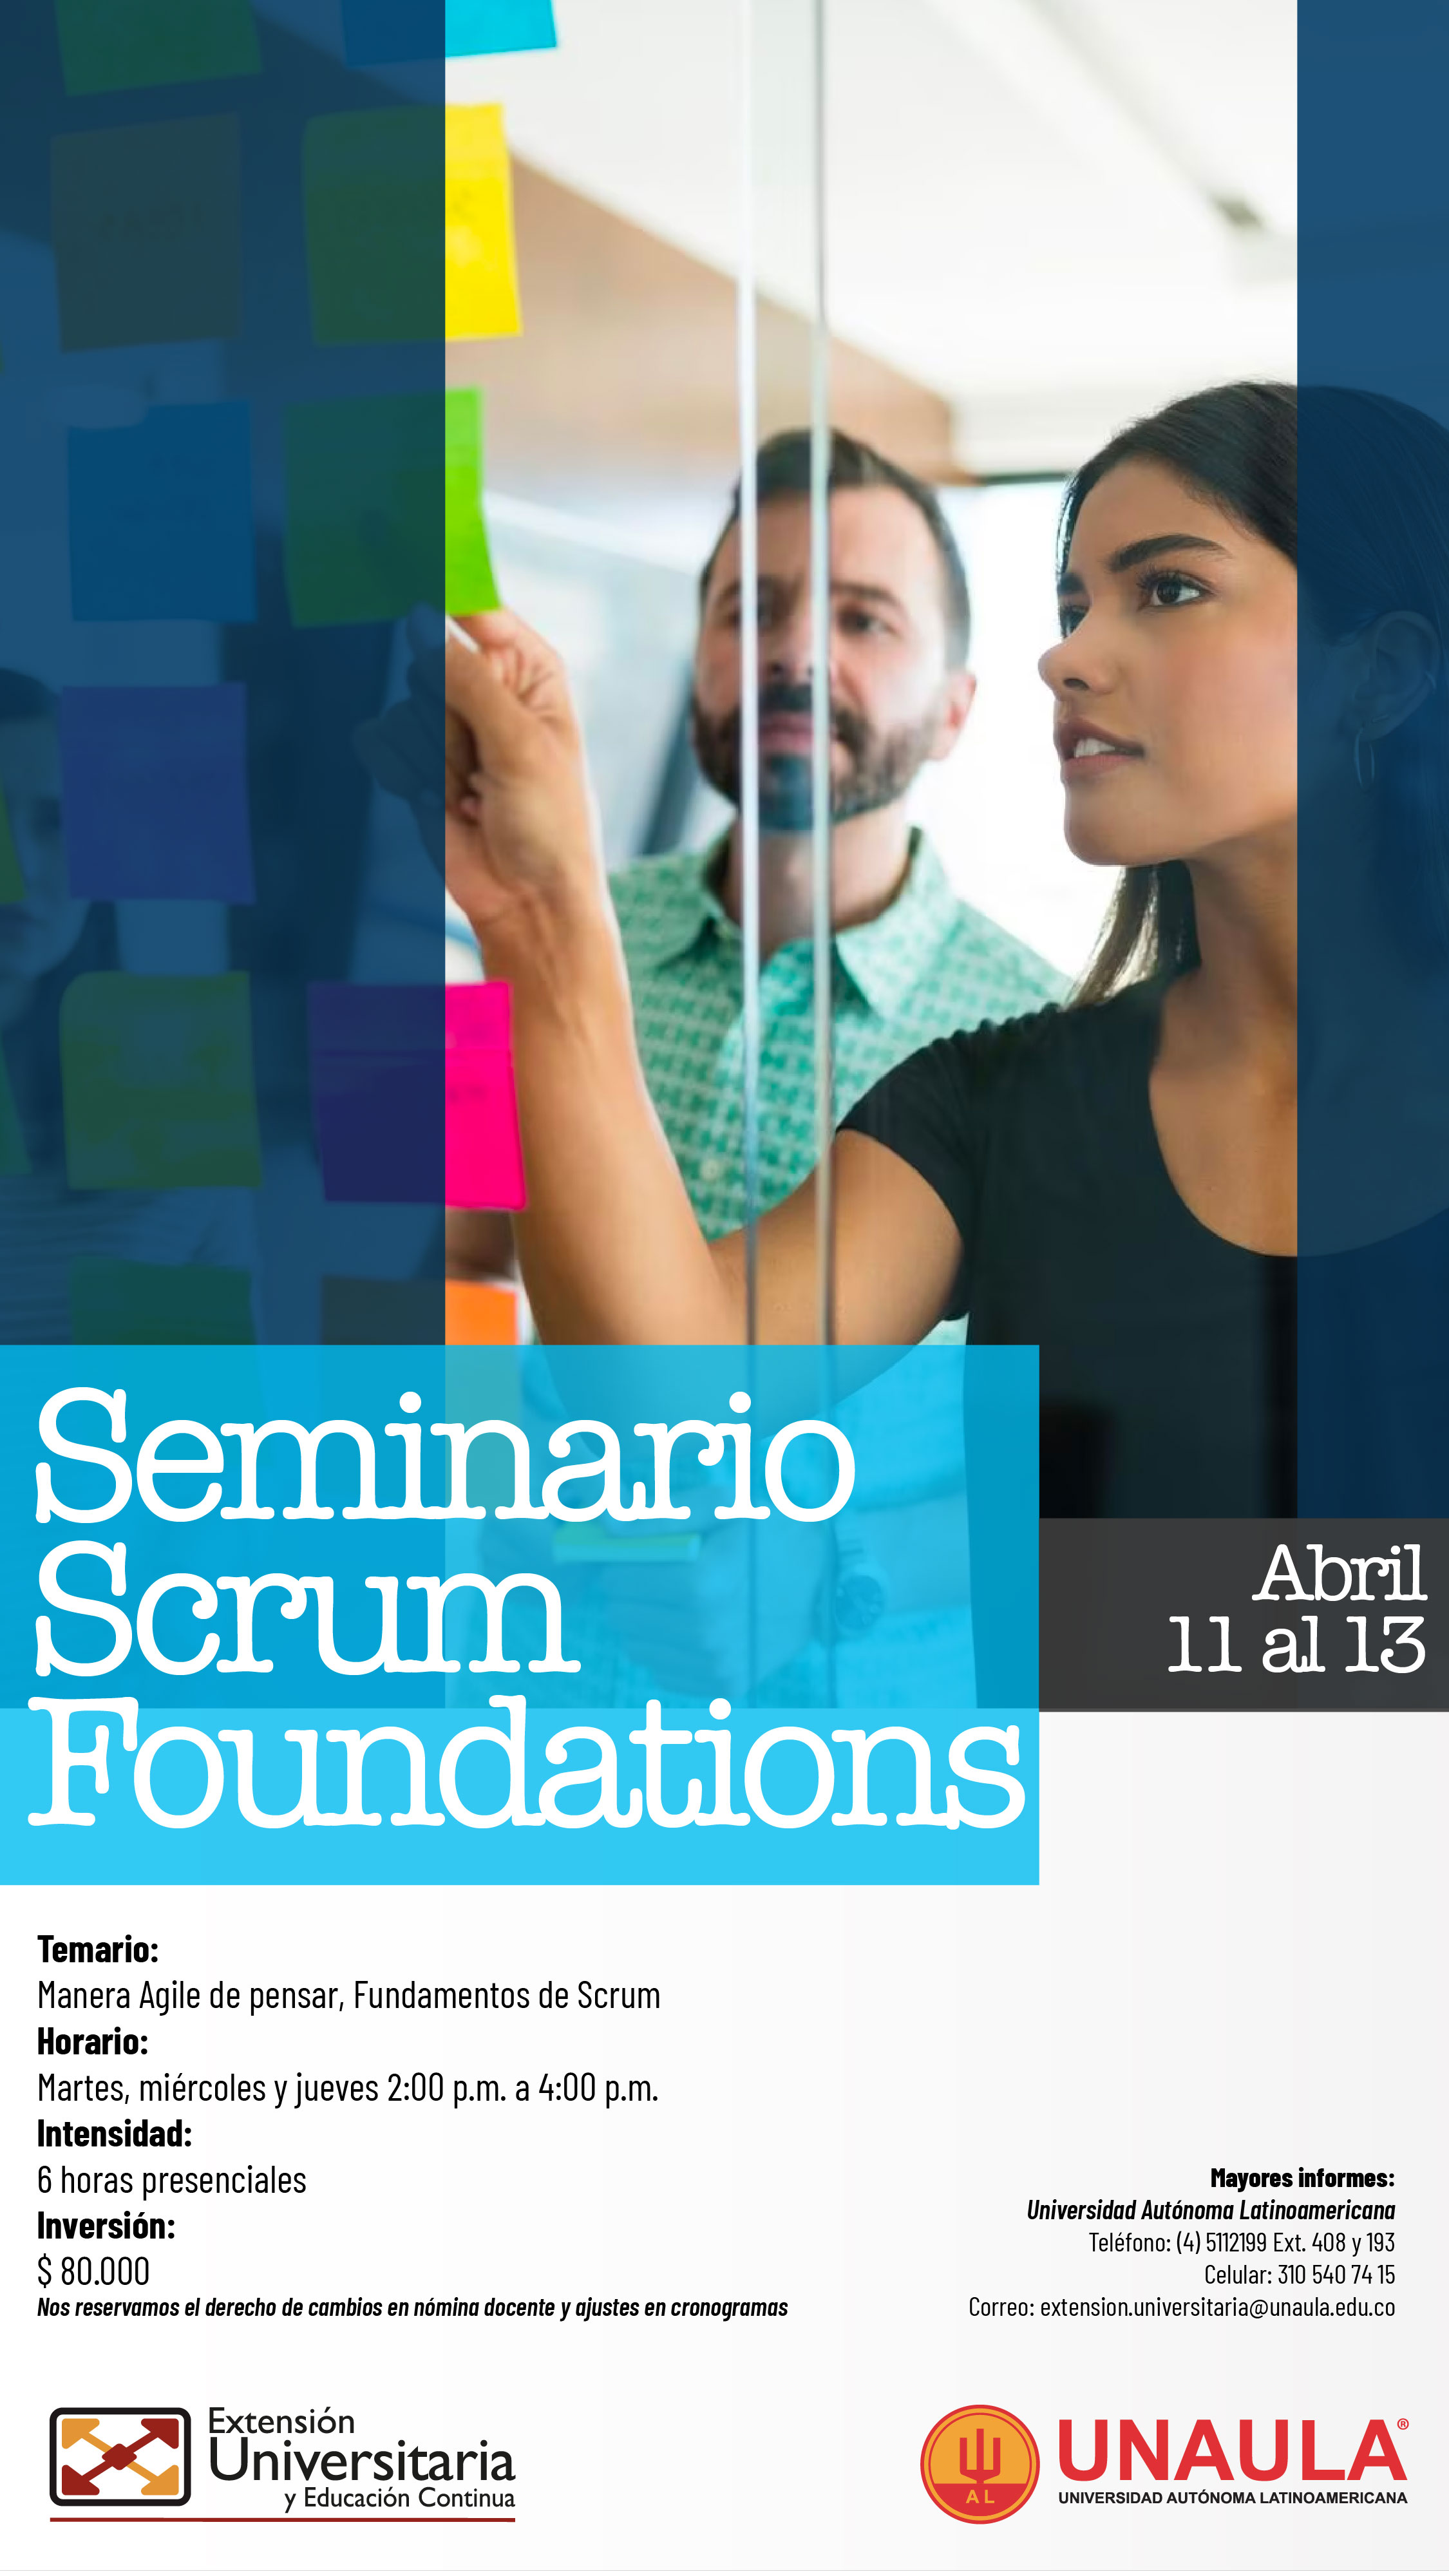 Seminario: Scrum foundations